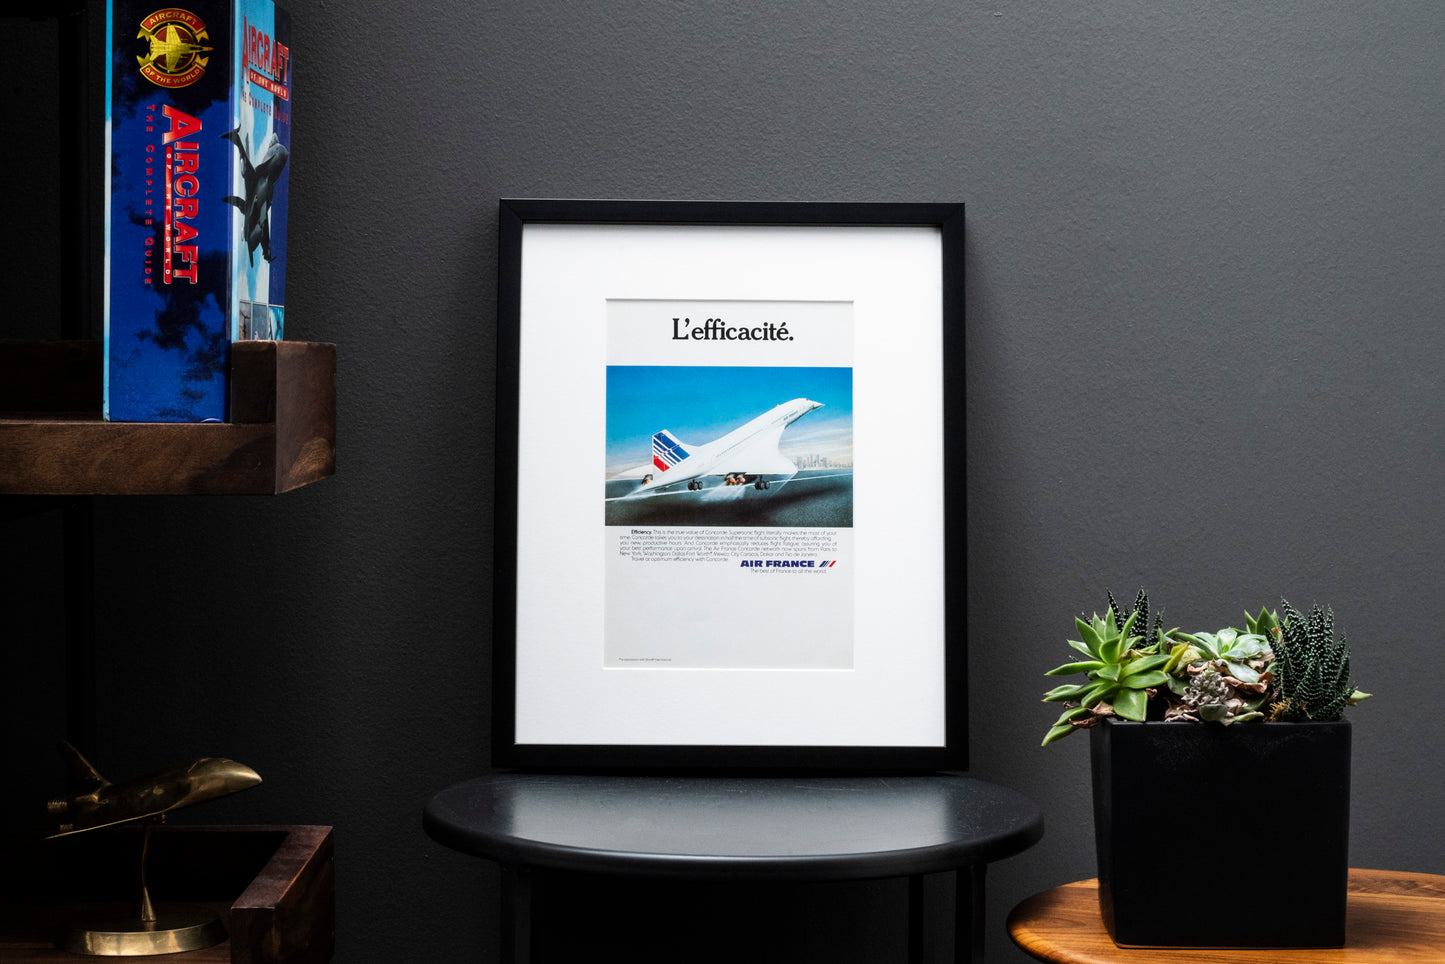 Air France Concorde 'L'efficacite'